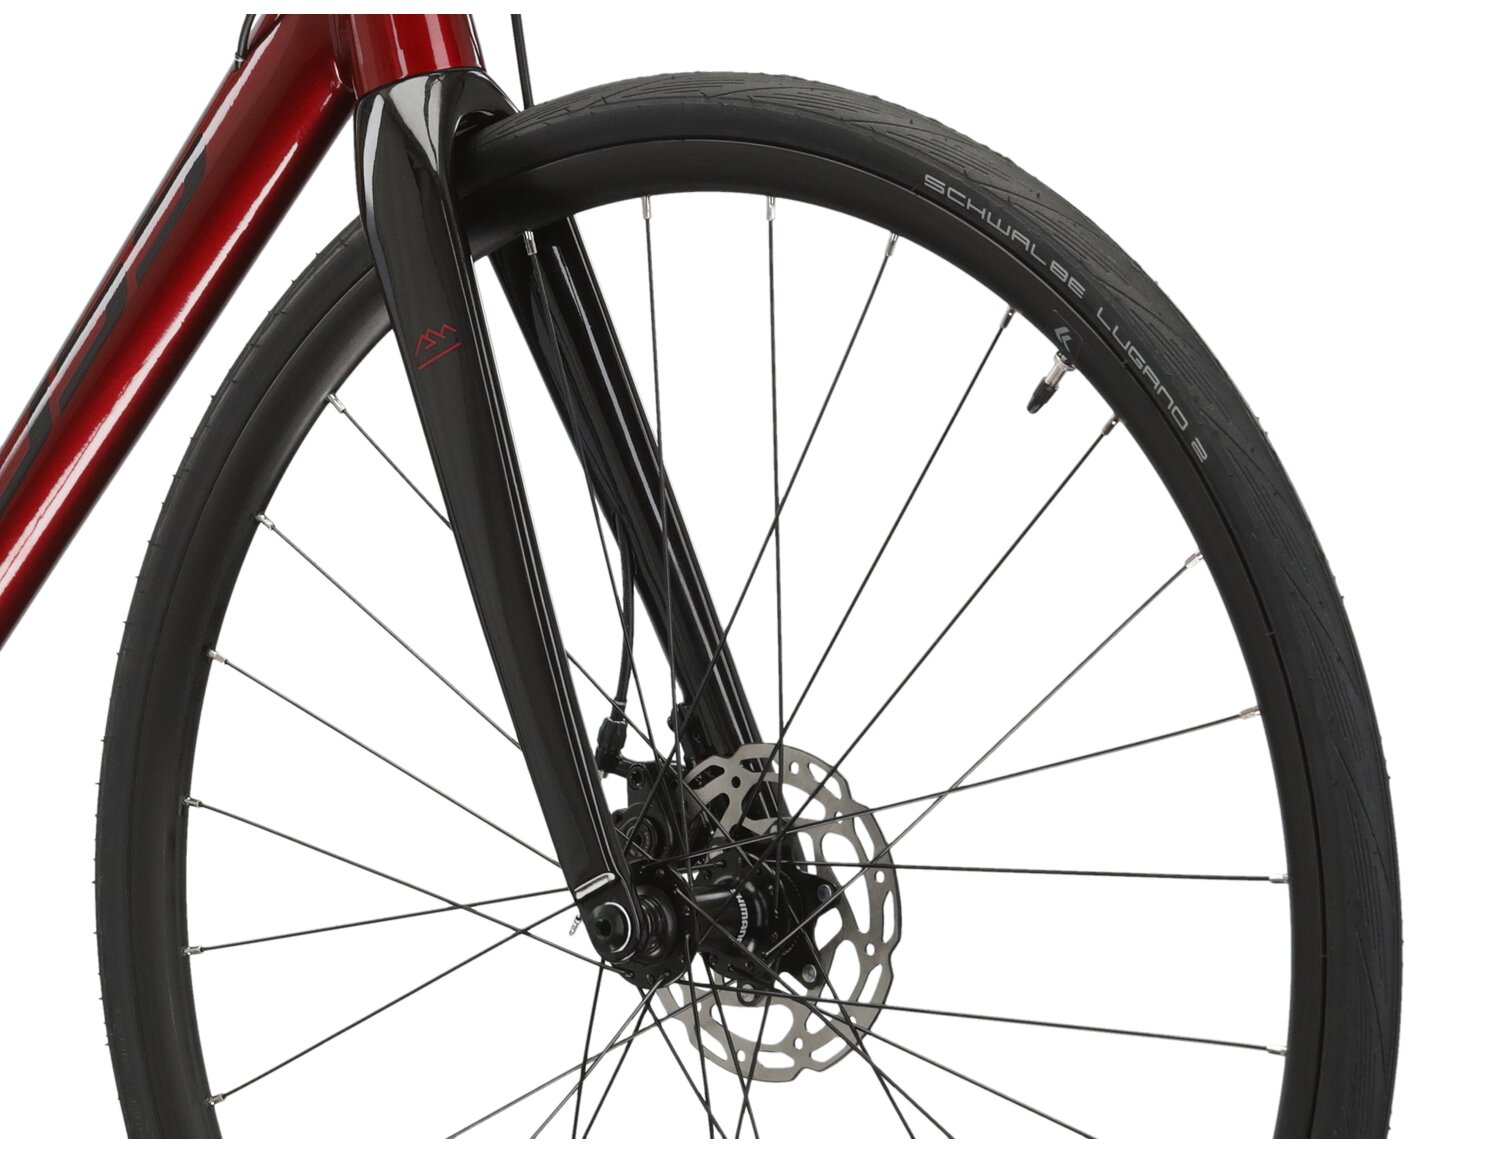  Aluminiowa rama, sztywny carbonowy widelec oraz opony Schwalbe w rowerze szosowym KROSS Vento DSC 4.0 